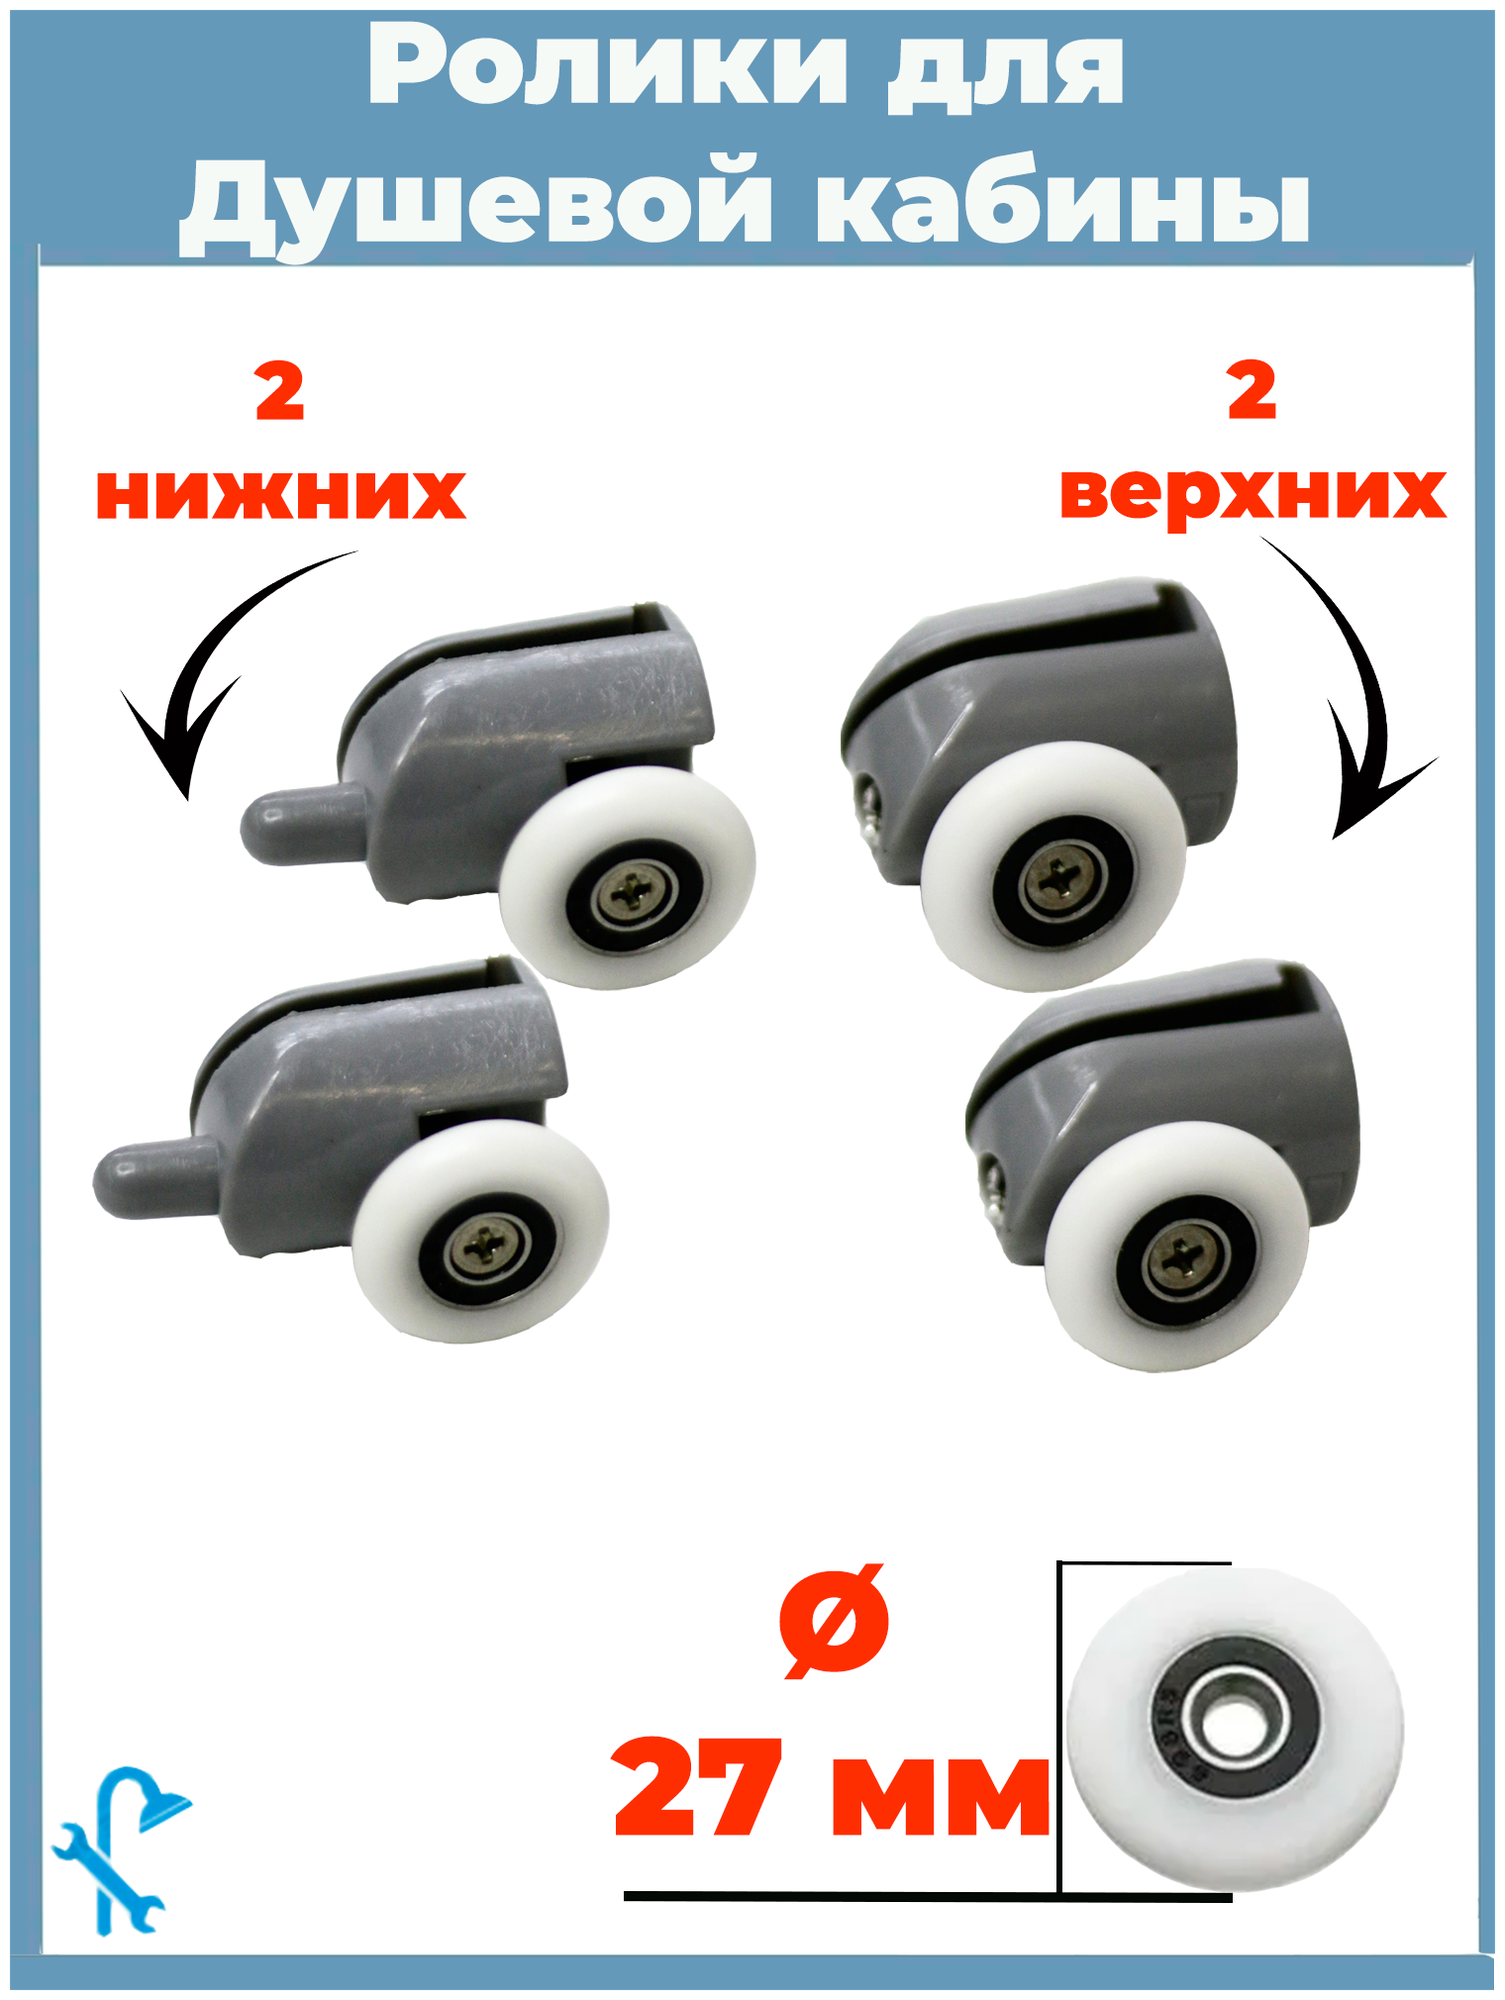 Комплект роликов для душевой кабины S-R02/4-27 4 штуки (2 верхних и 2 нижних) серые одинарные диаметр колеса 27 мм.